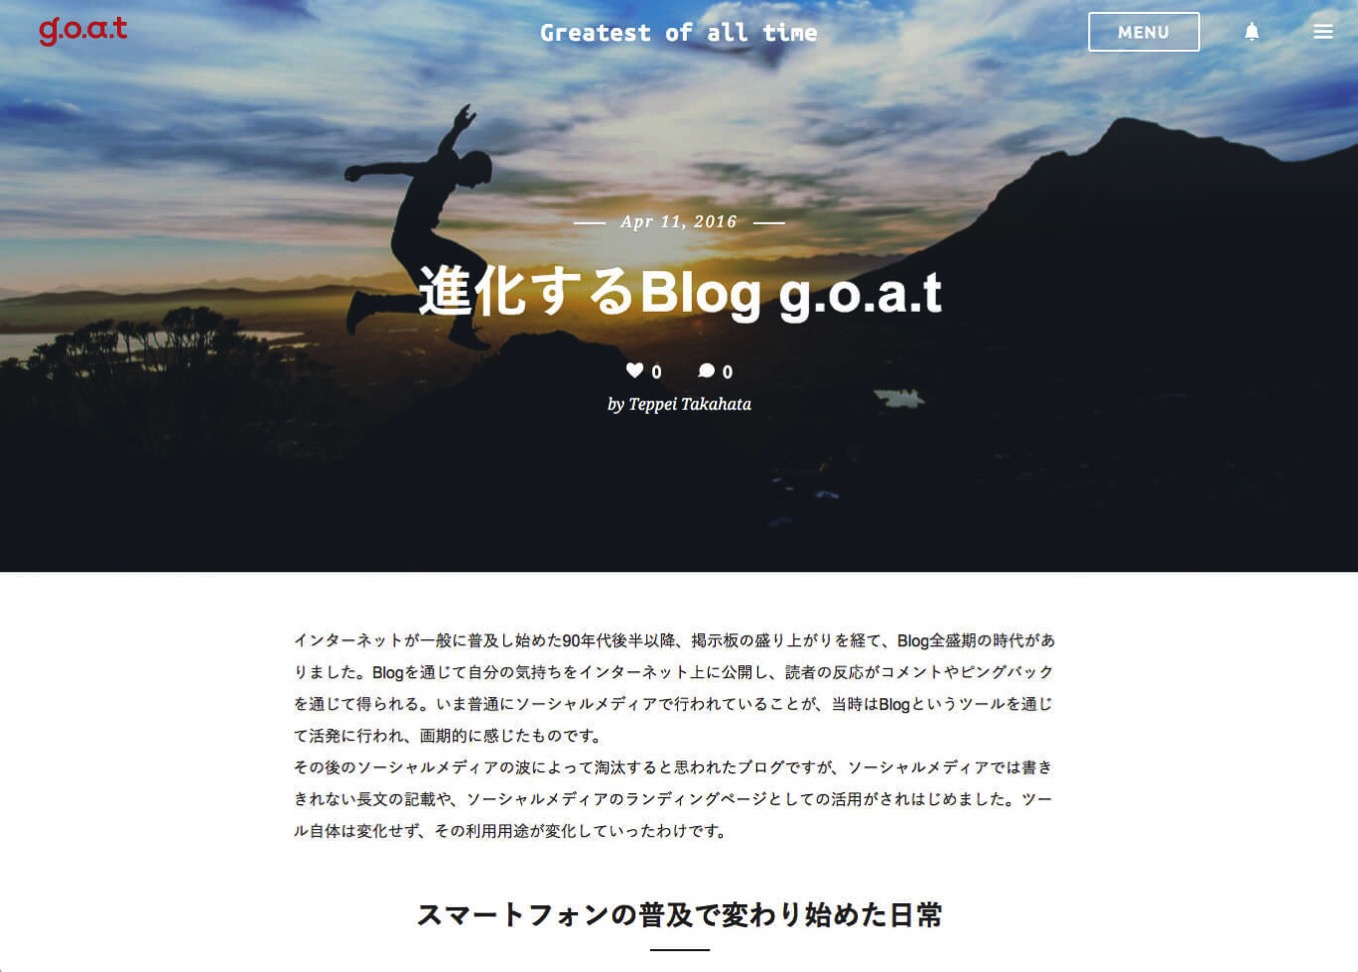 KDDIウェブ、ブログプラットフォーム「g.o.a.t（ゴート）」を発表、事前登録開始 ―― 7月より順次β版を利用開始